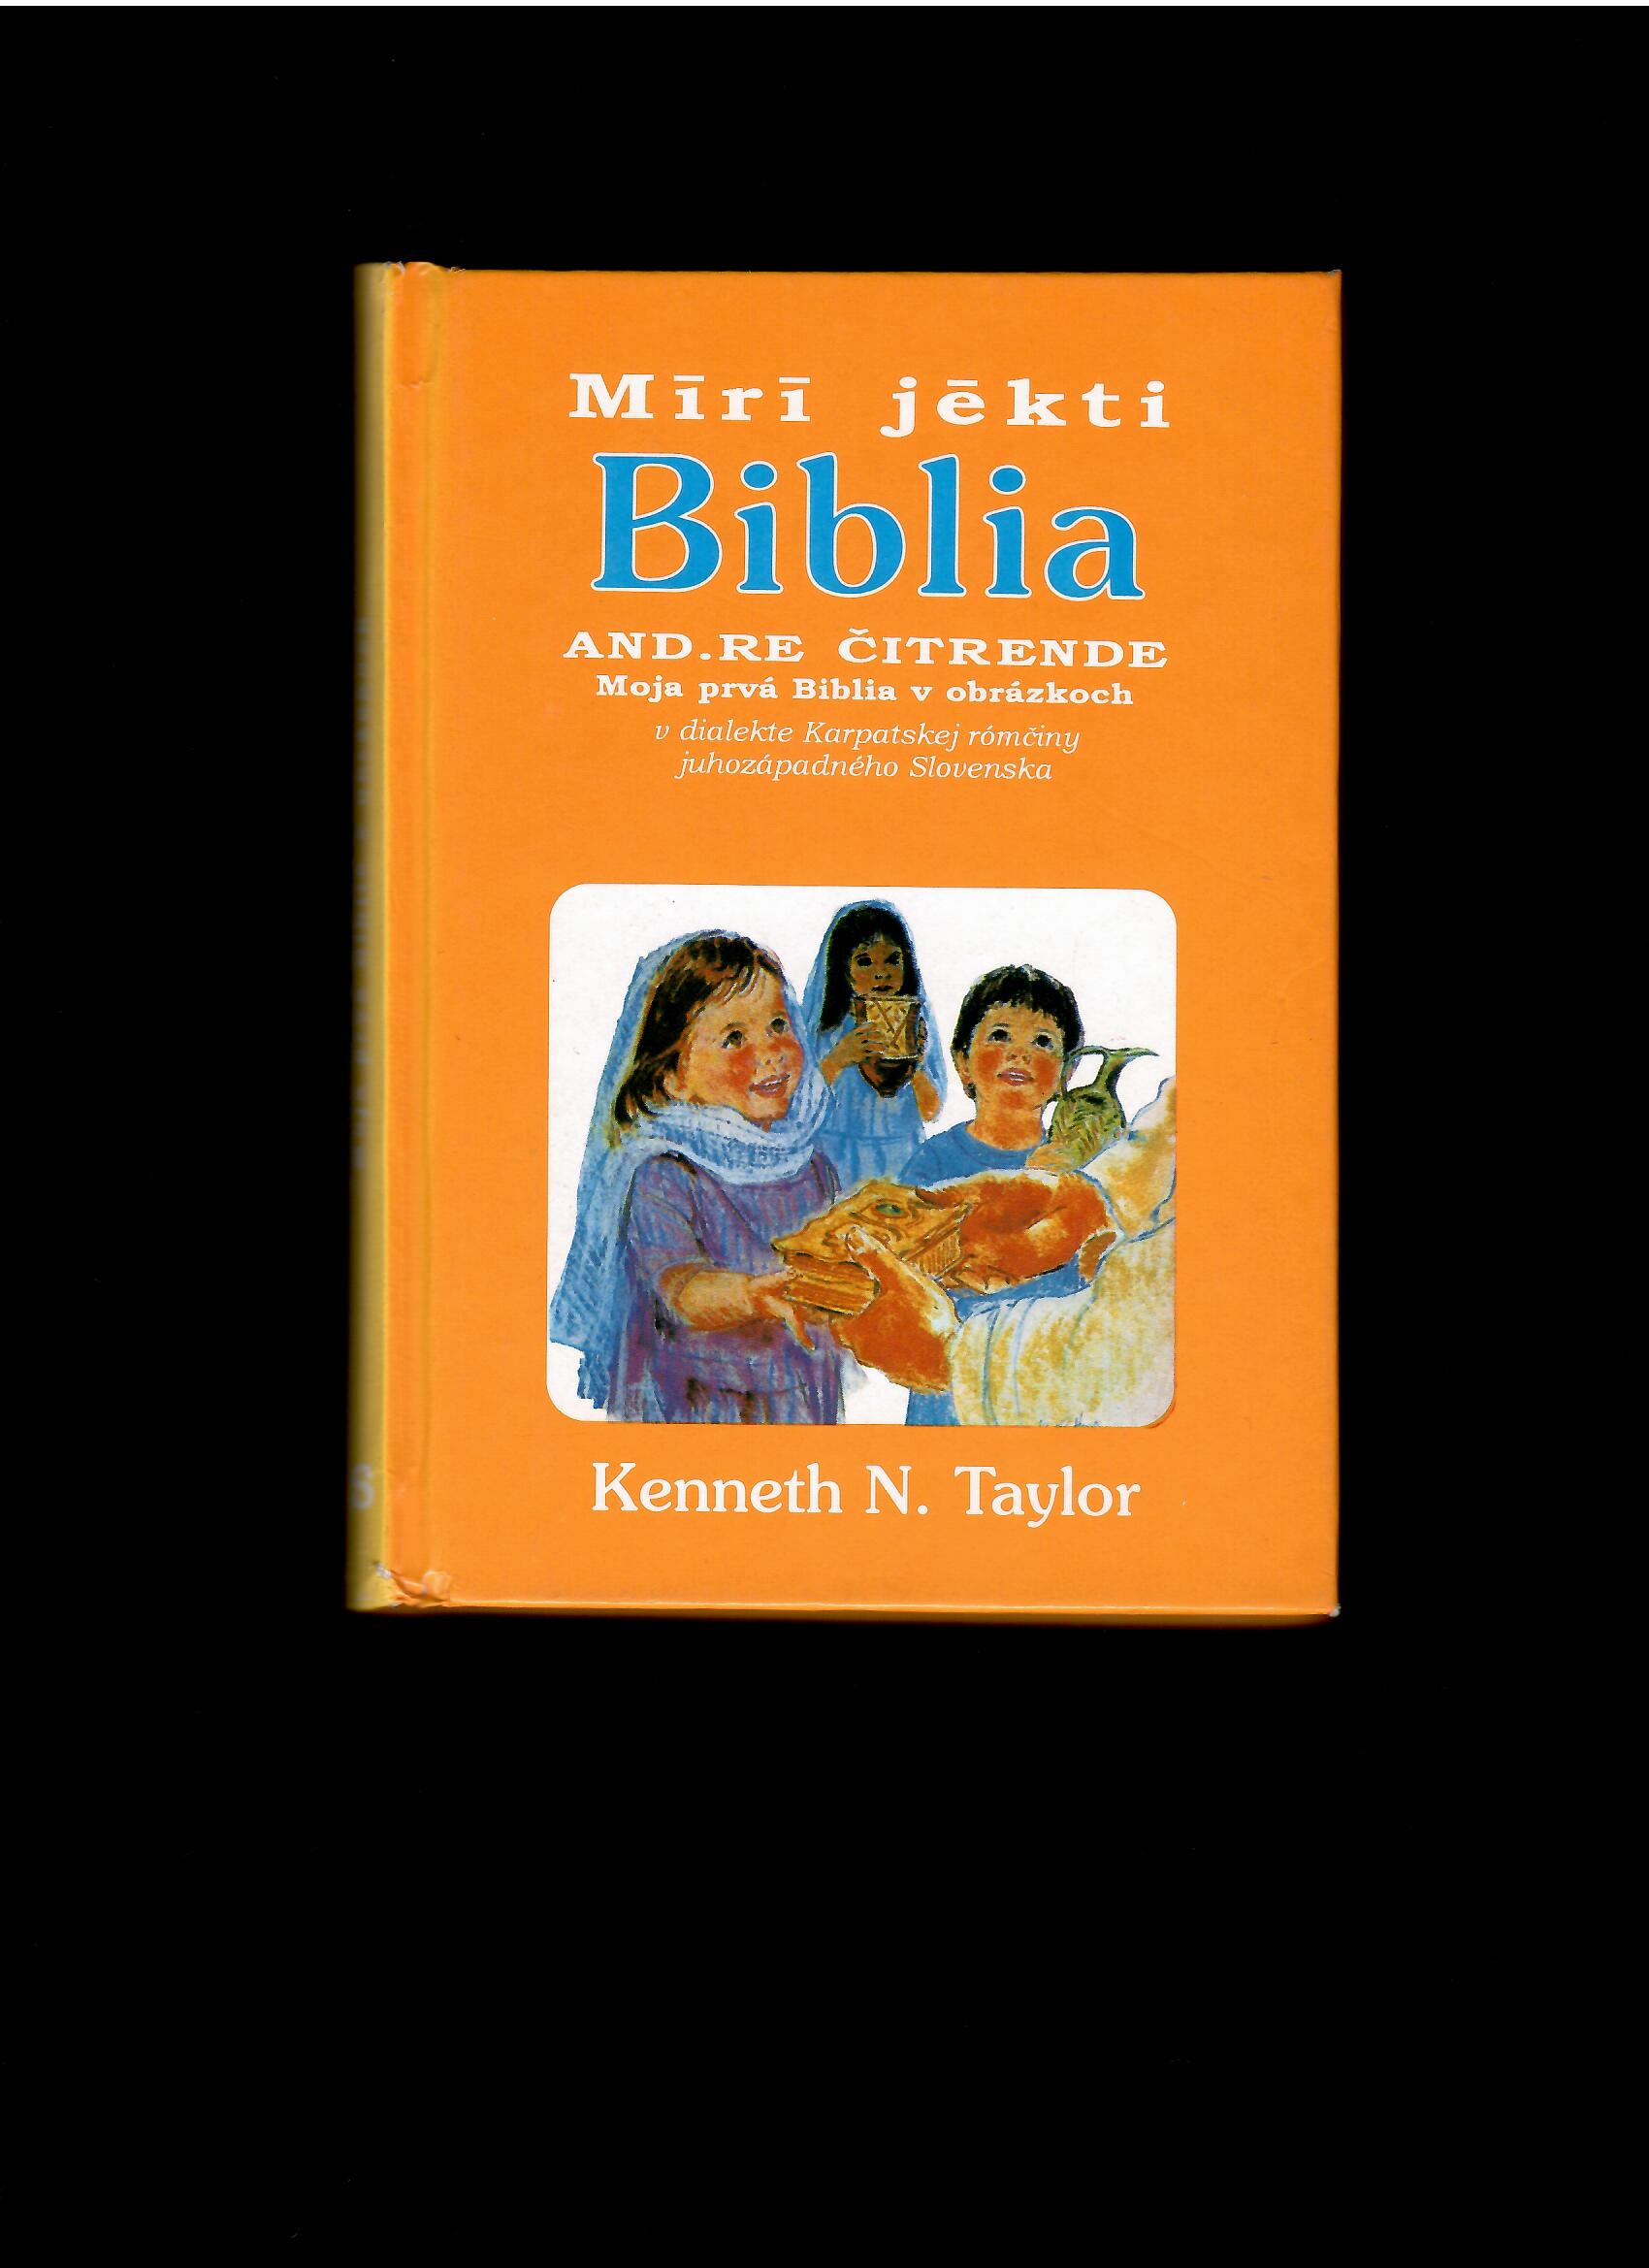 Kenneth N. Taylor: Moja prvá Biblia v obrázkoch v dialekte Karpatskej rómčiny